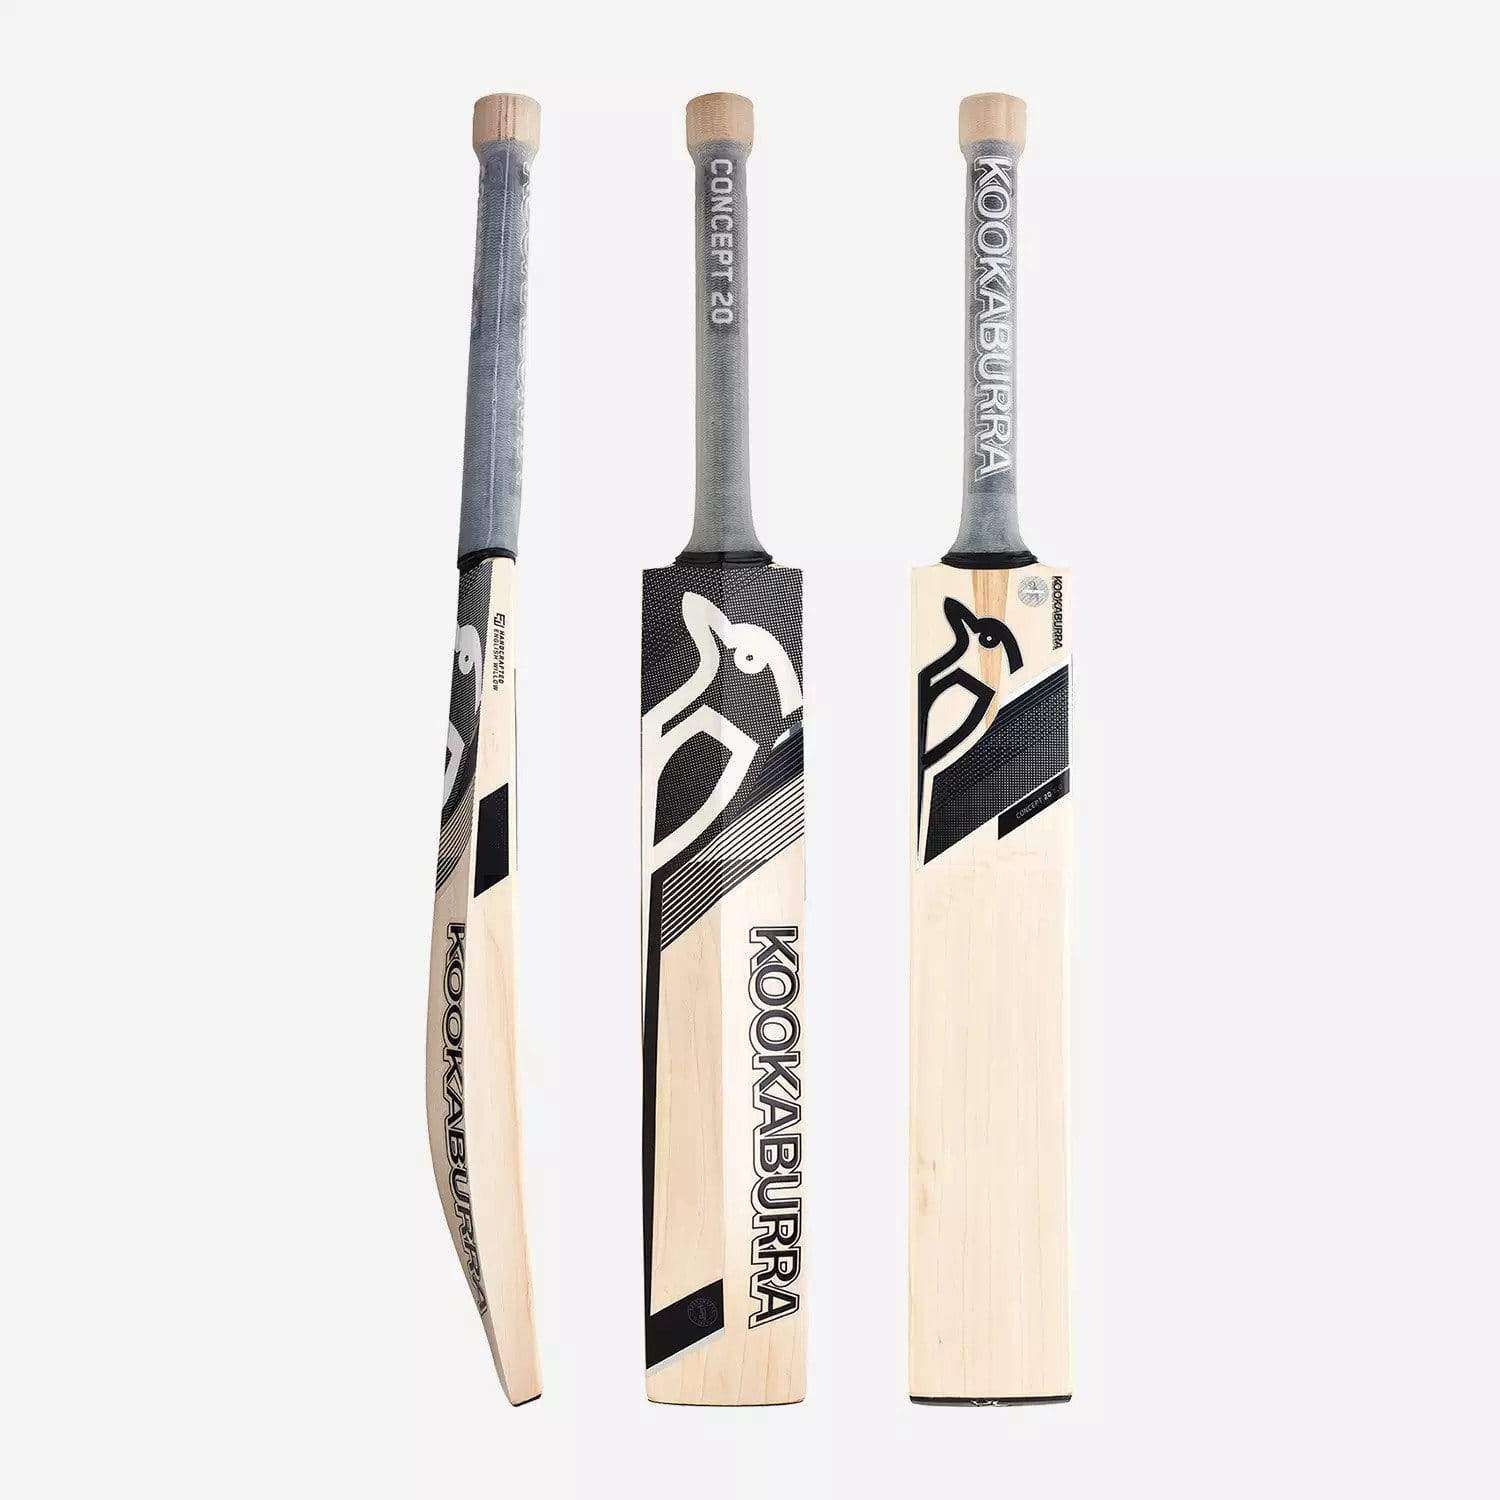 Kookaburra Cricket Bats Short Hand / 2lbs 7oz - 2lbs 10oz Kookaburra Concept 20 Pro 5.0 Adult Cricket Bat